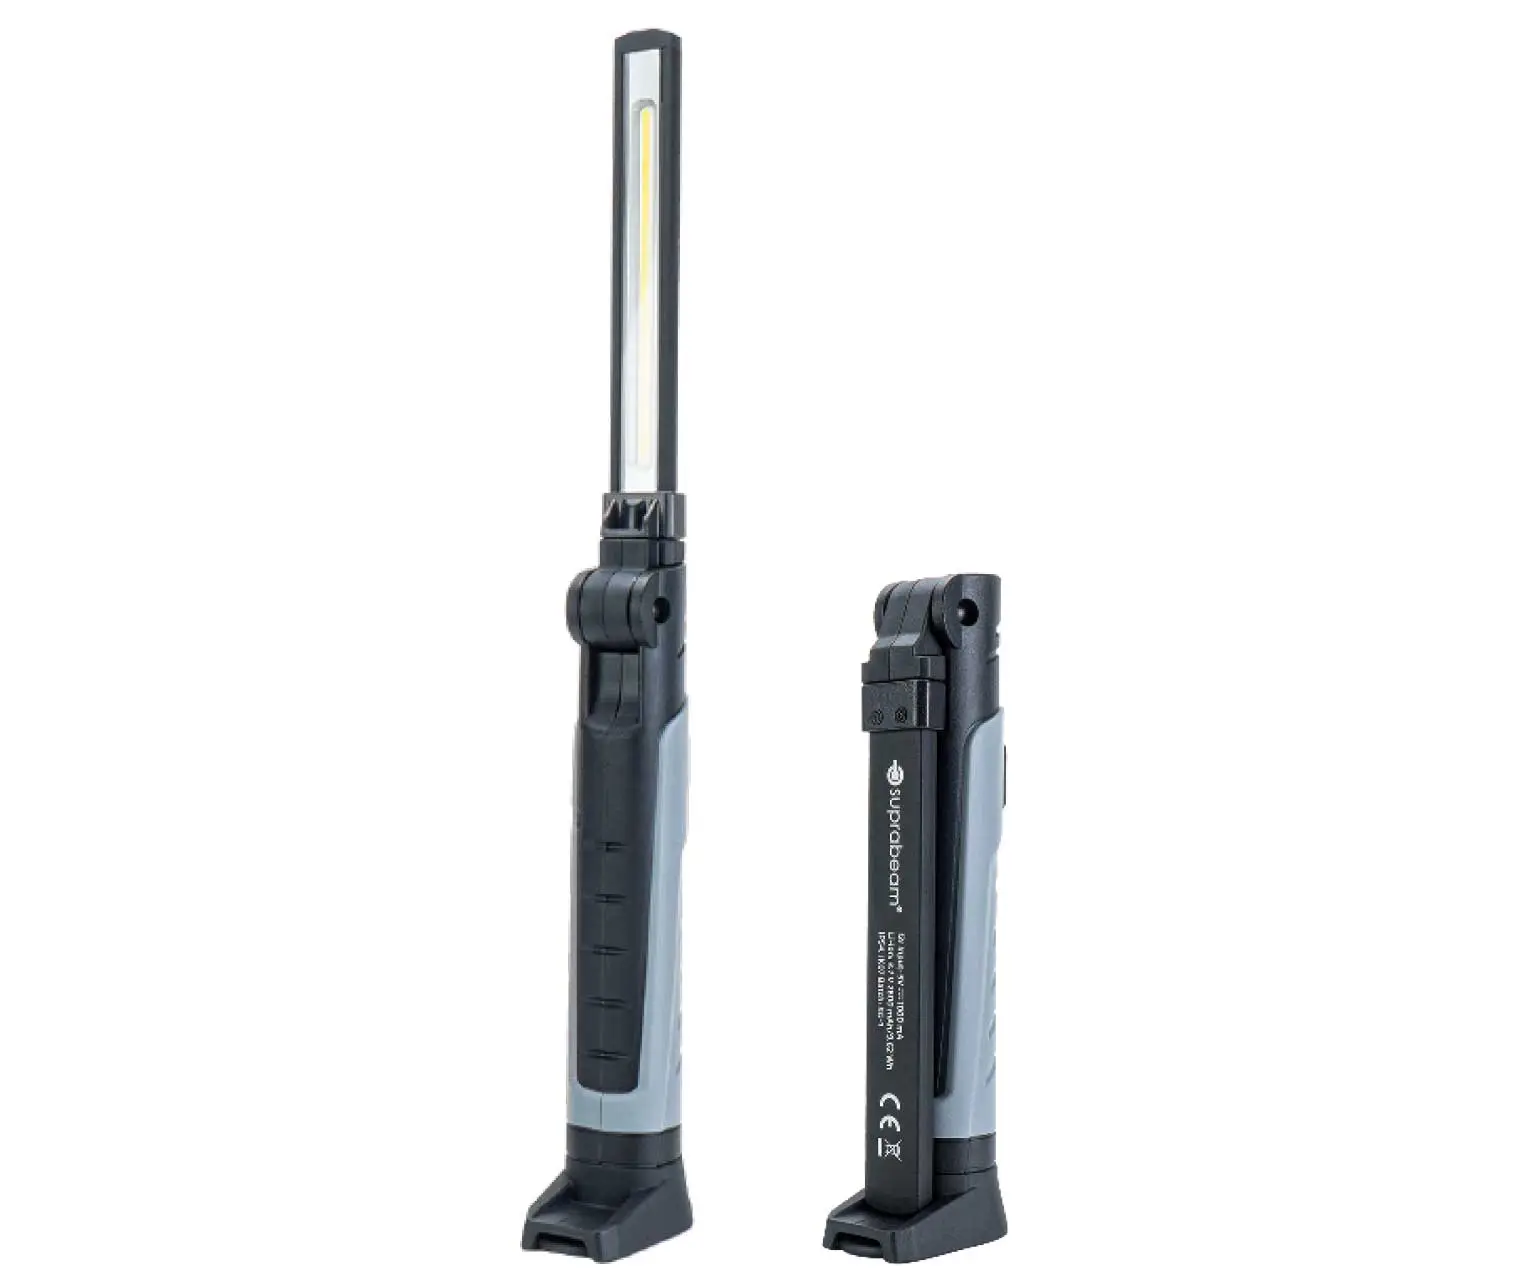 Kompakte und sehr handliche schmale LED-Akku-Handleuchte bzw. Werkstattleuchte in dunkel - hell grau mit Front- und Kopflicht